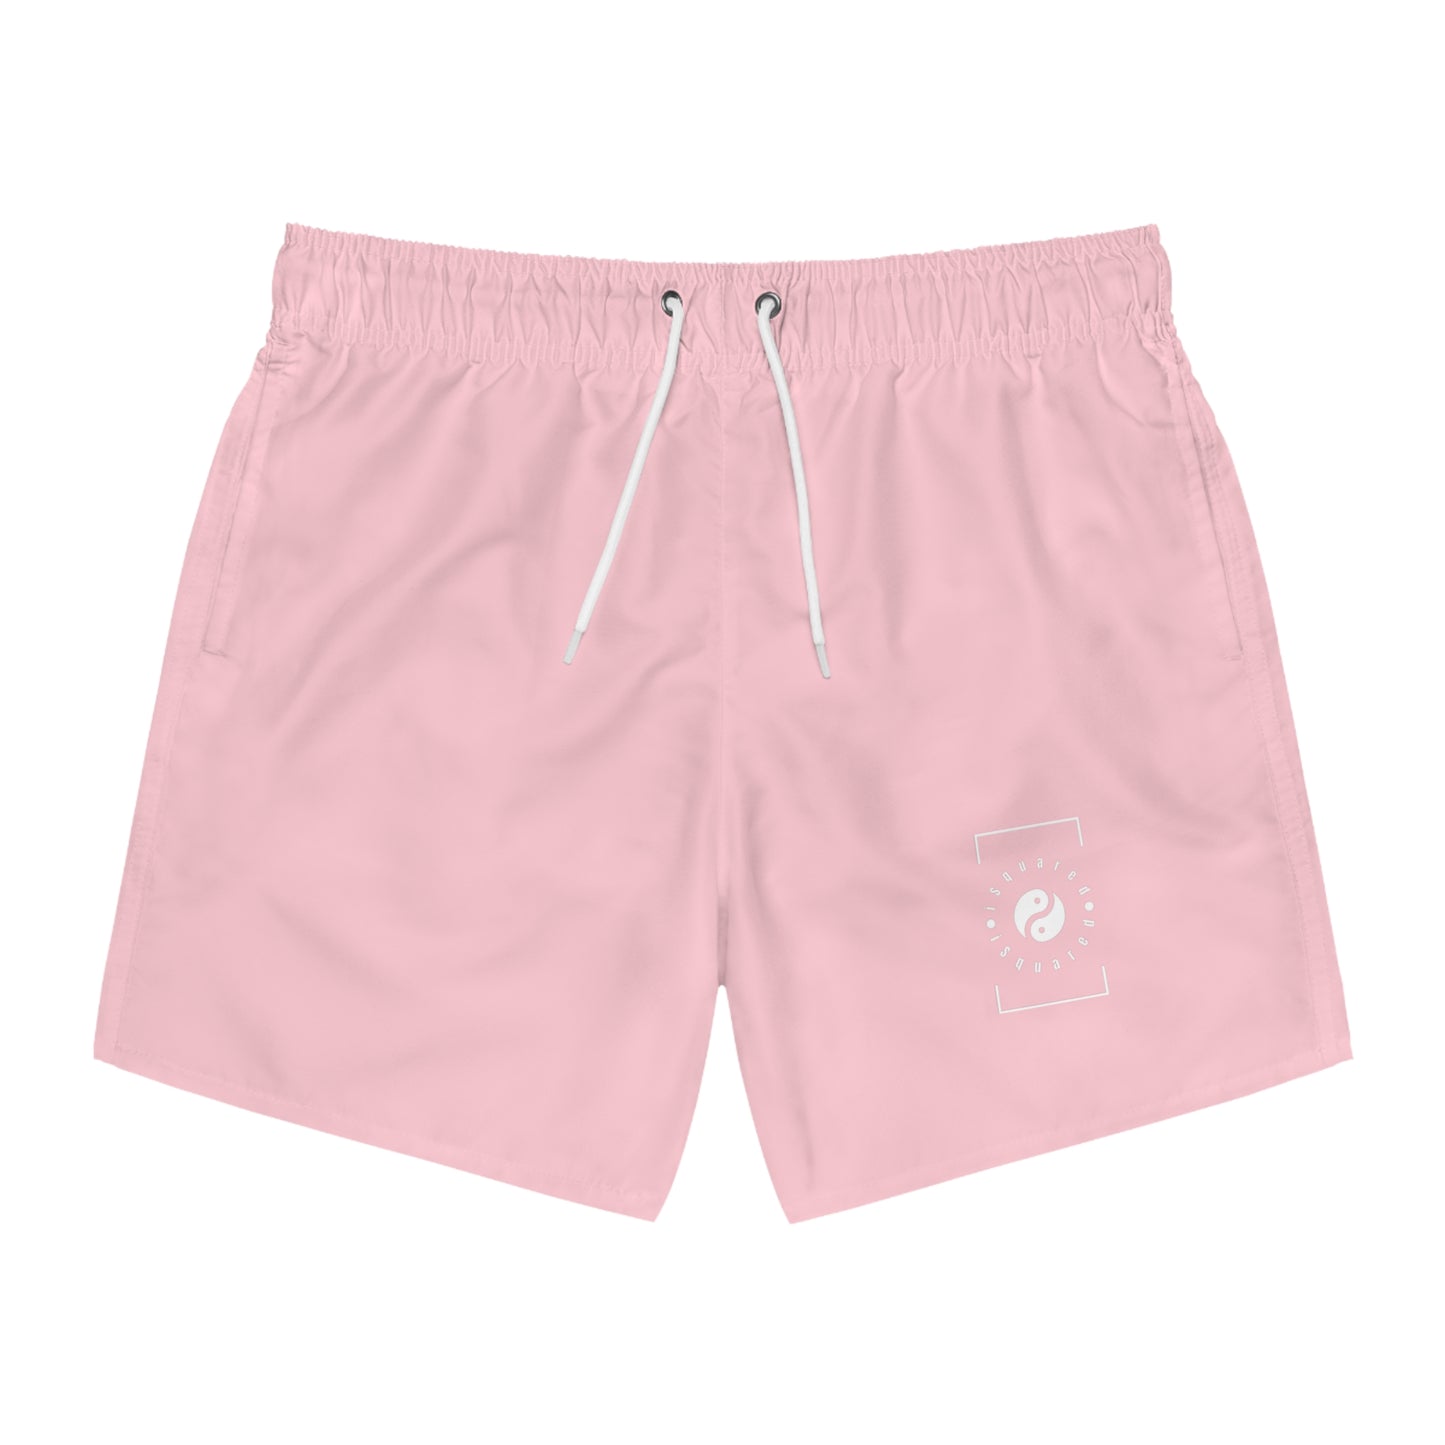 FFCCD4 Light Pink - Swim Trunks for Men